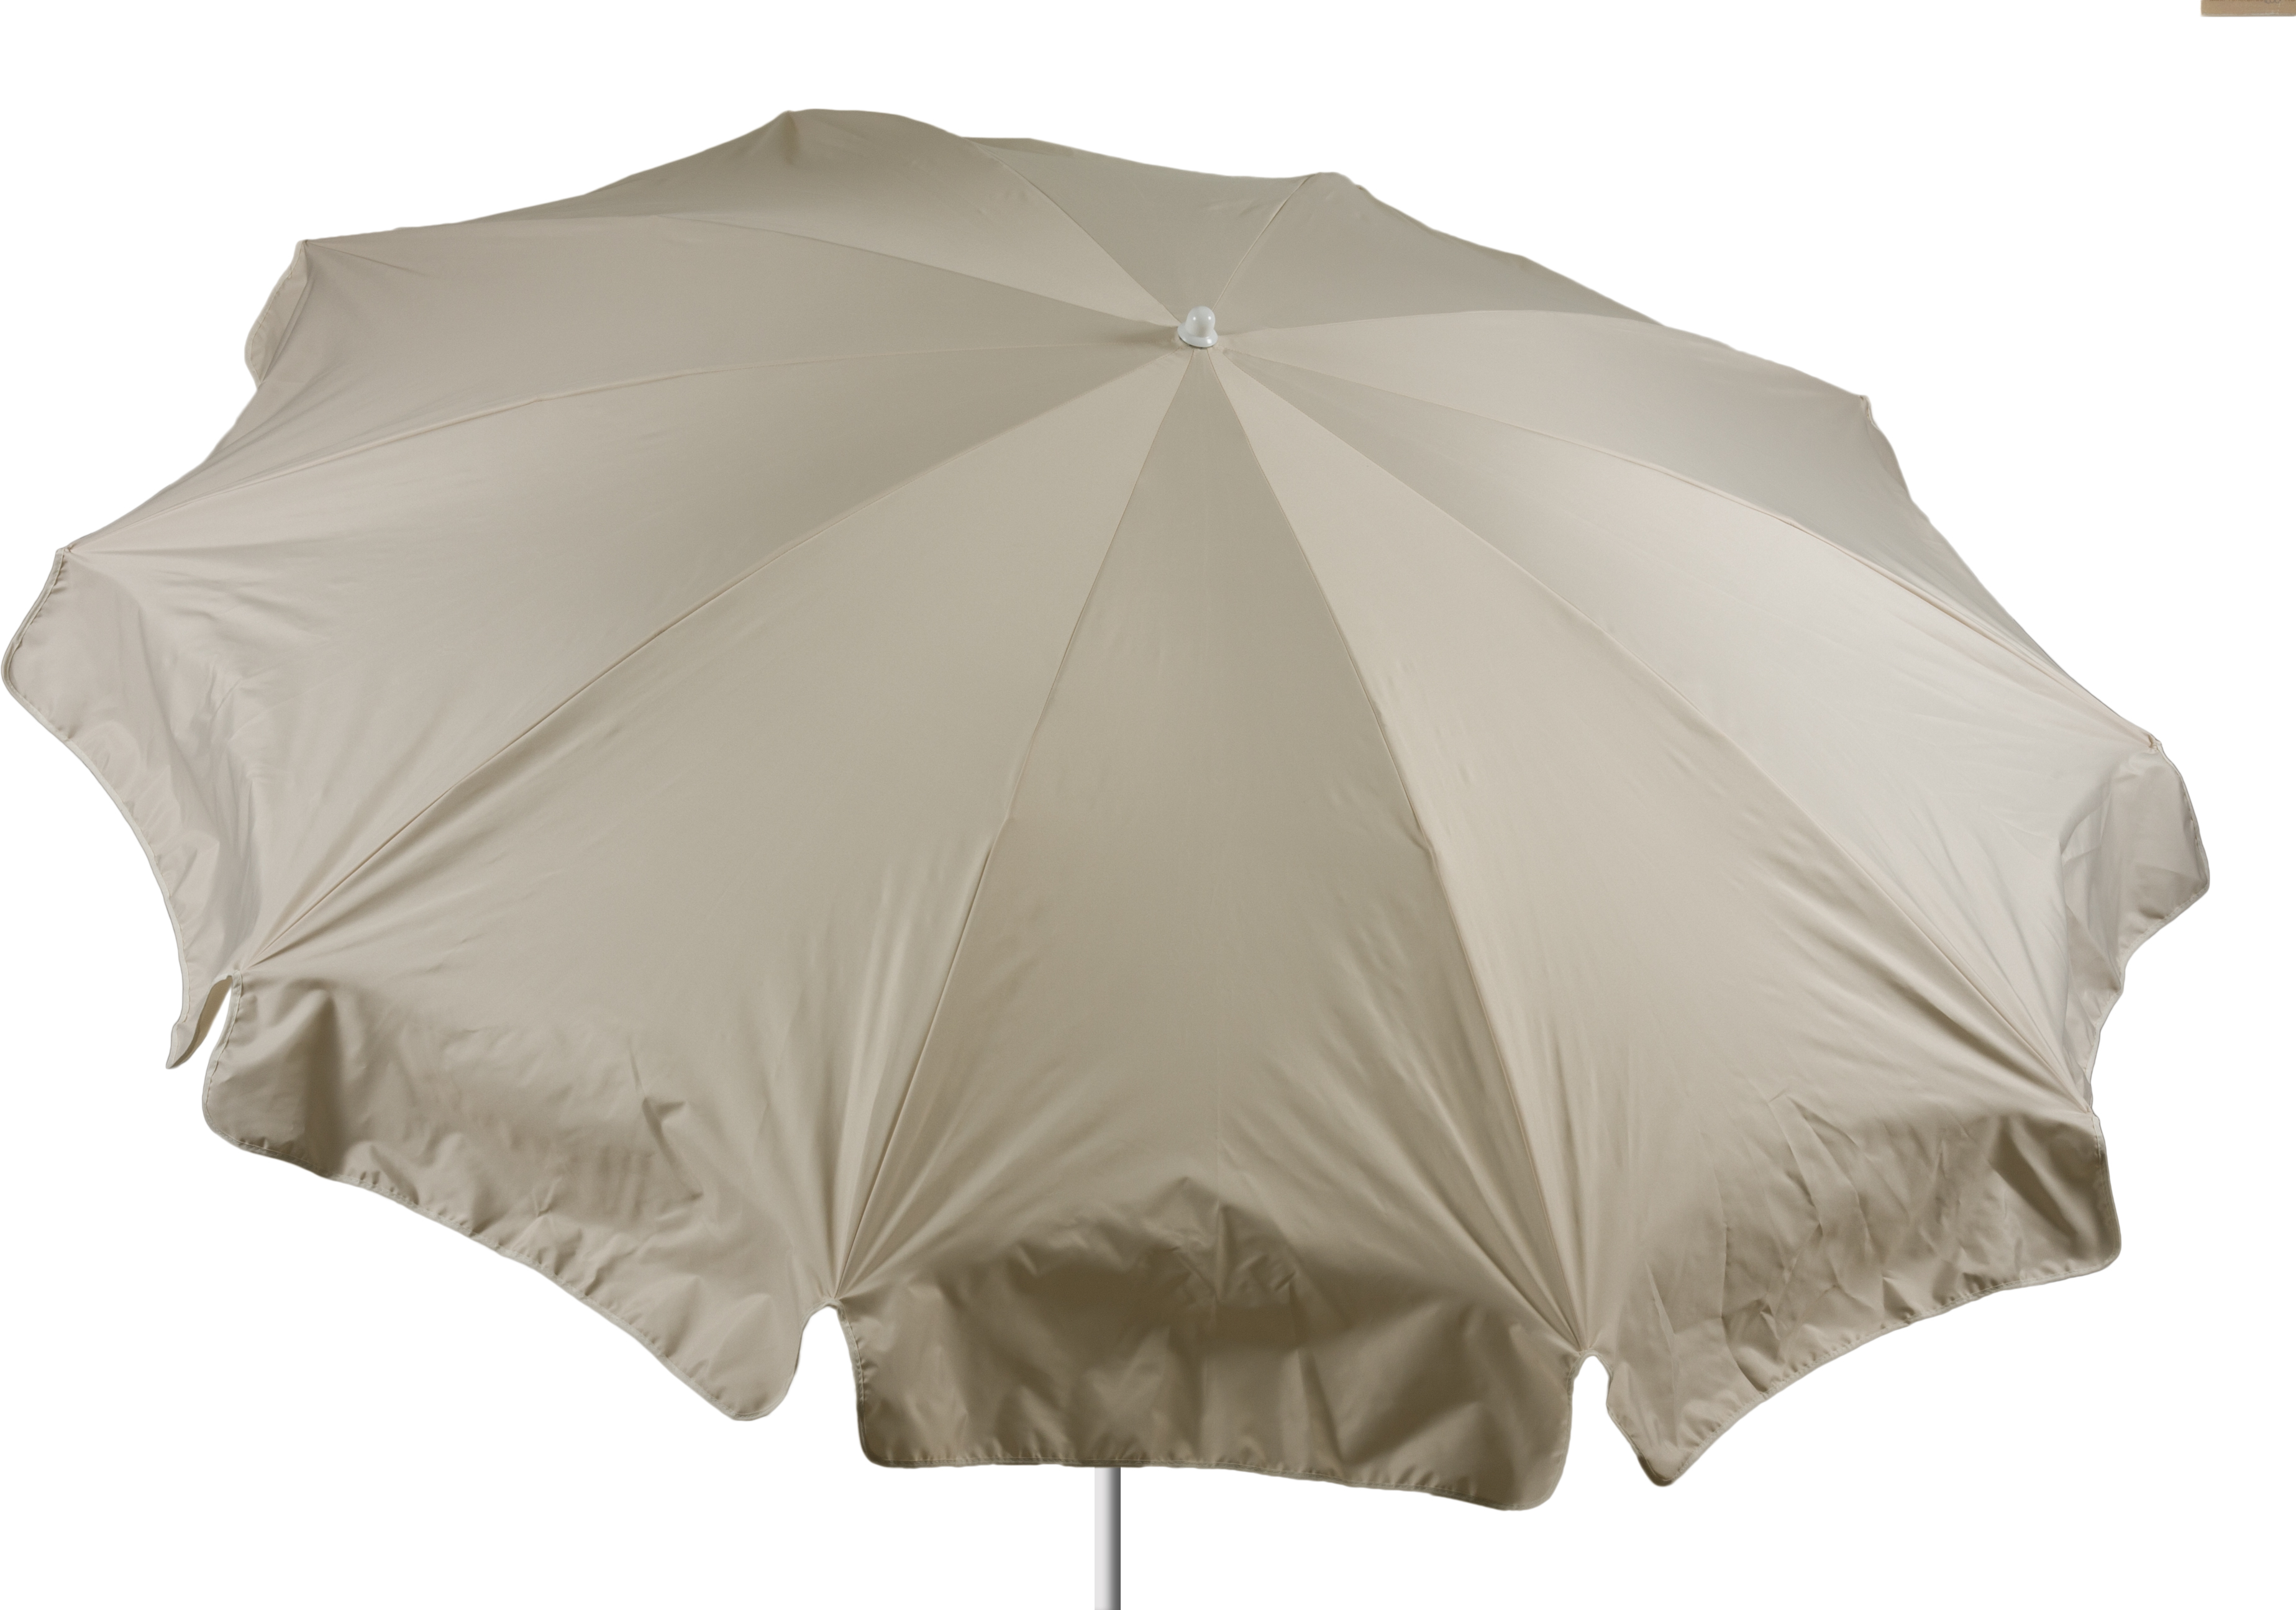 Sonnenschirm 240 cm Durchmesser in beige Bespannung 100% Polyester wasserabweisend 2,7kg